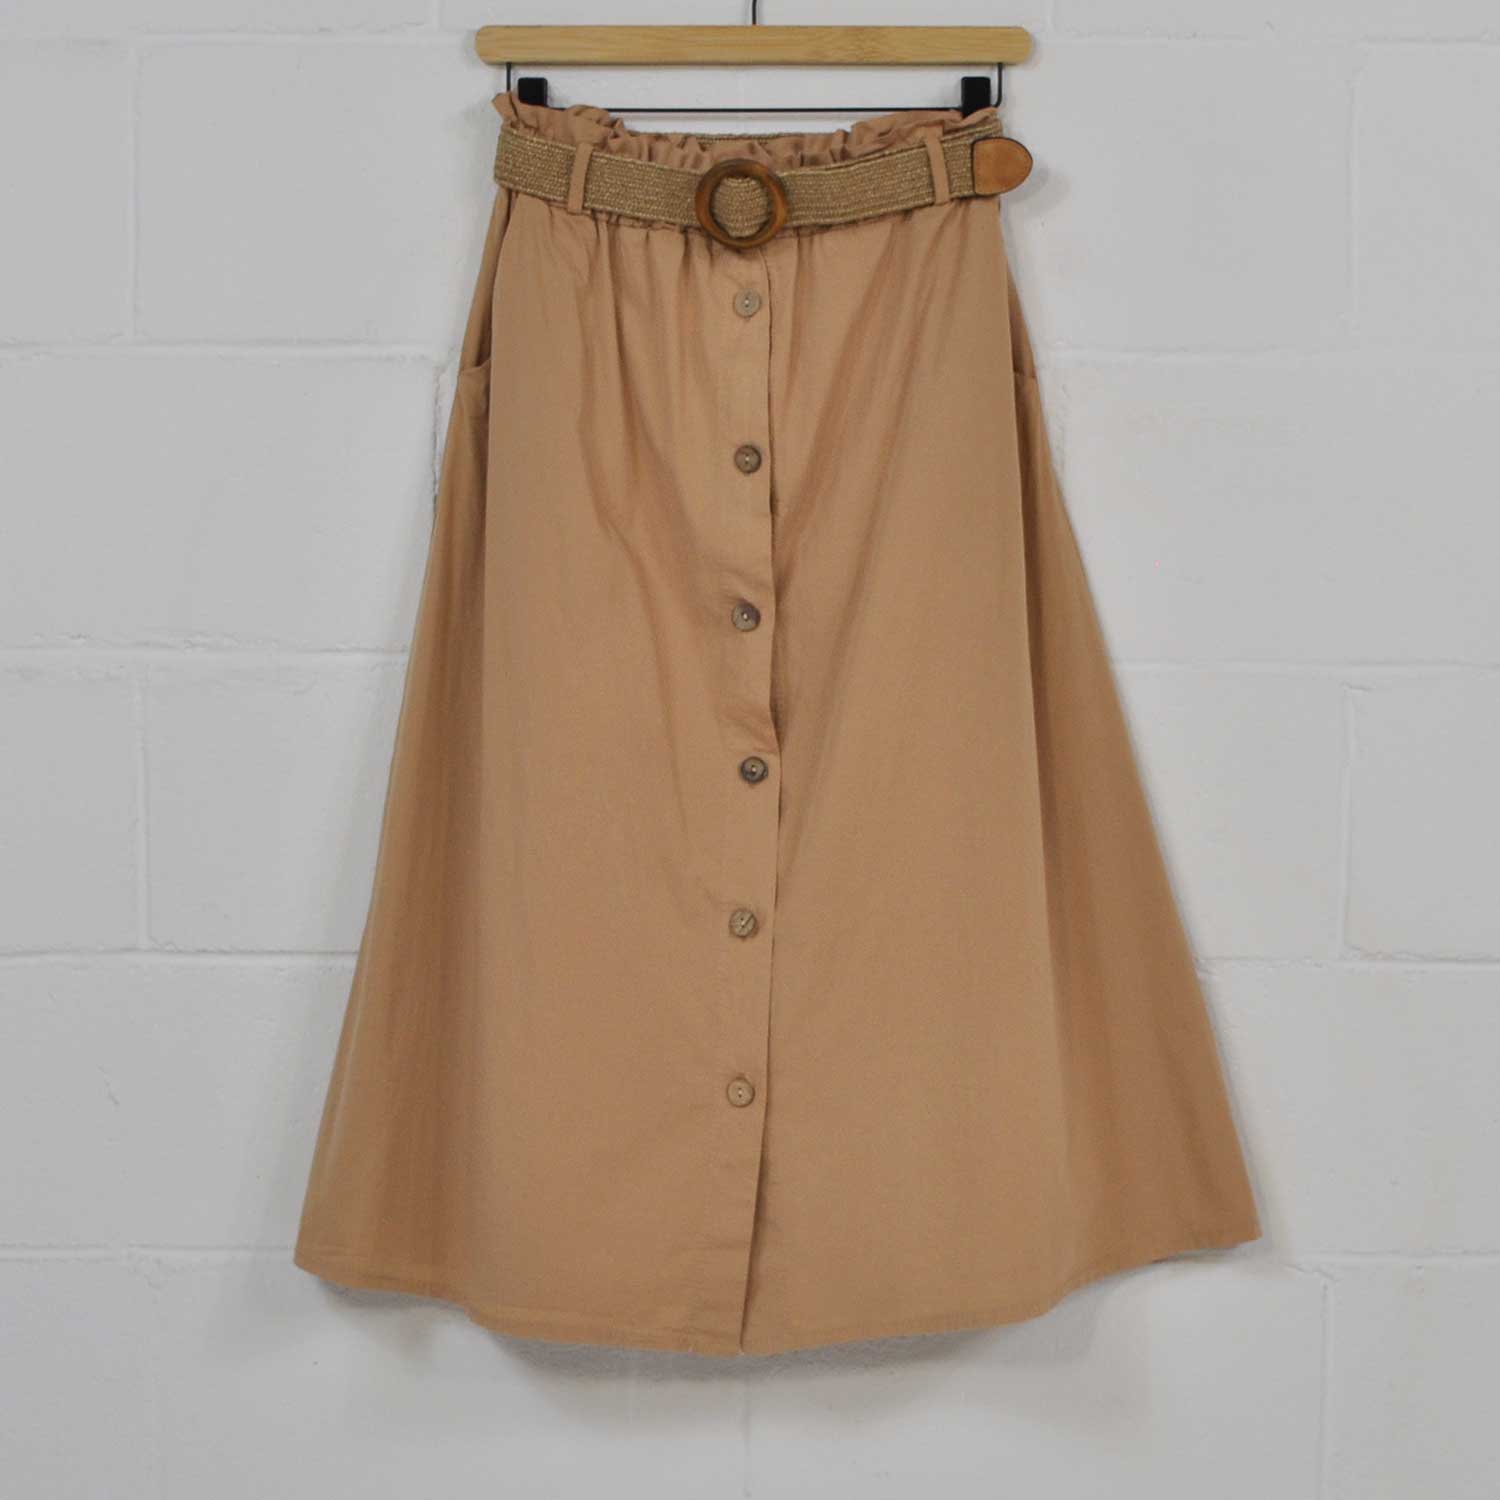 Camel belt skirt